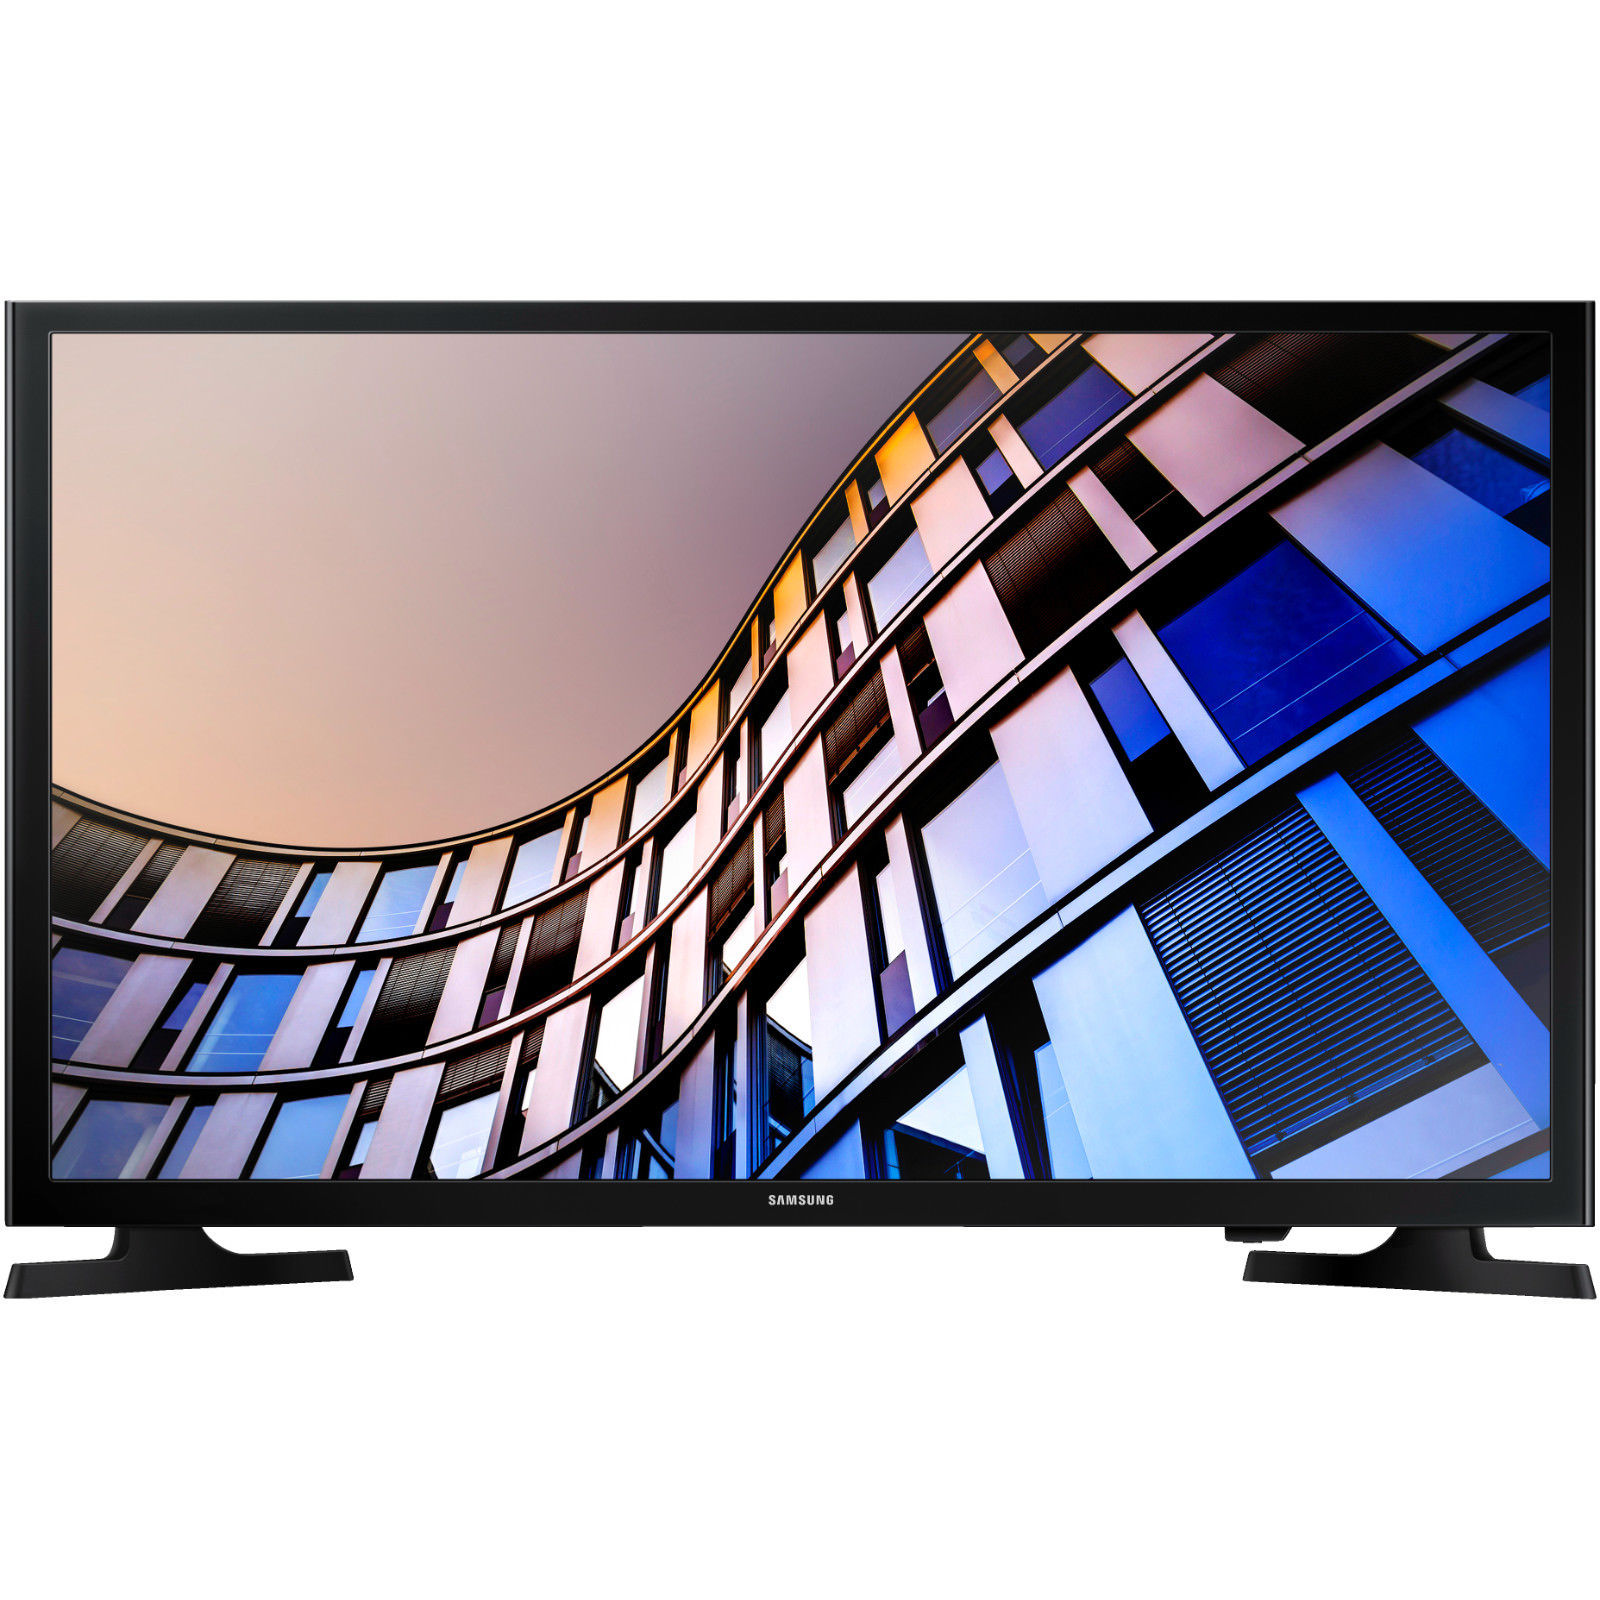 Bild zu 32 Zoll LED Fernseher Samsung UE32M4005AKXXC für 129€ (eBay Plus Mitglieder)